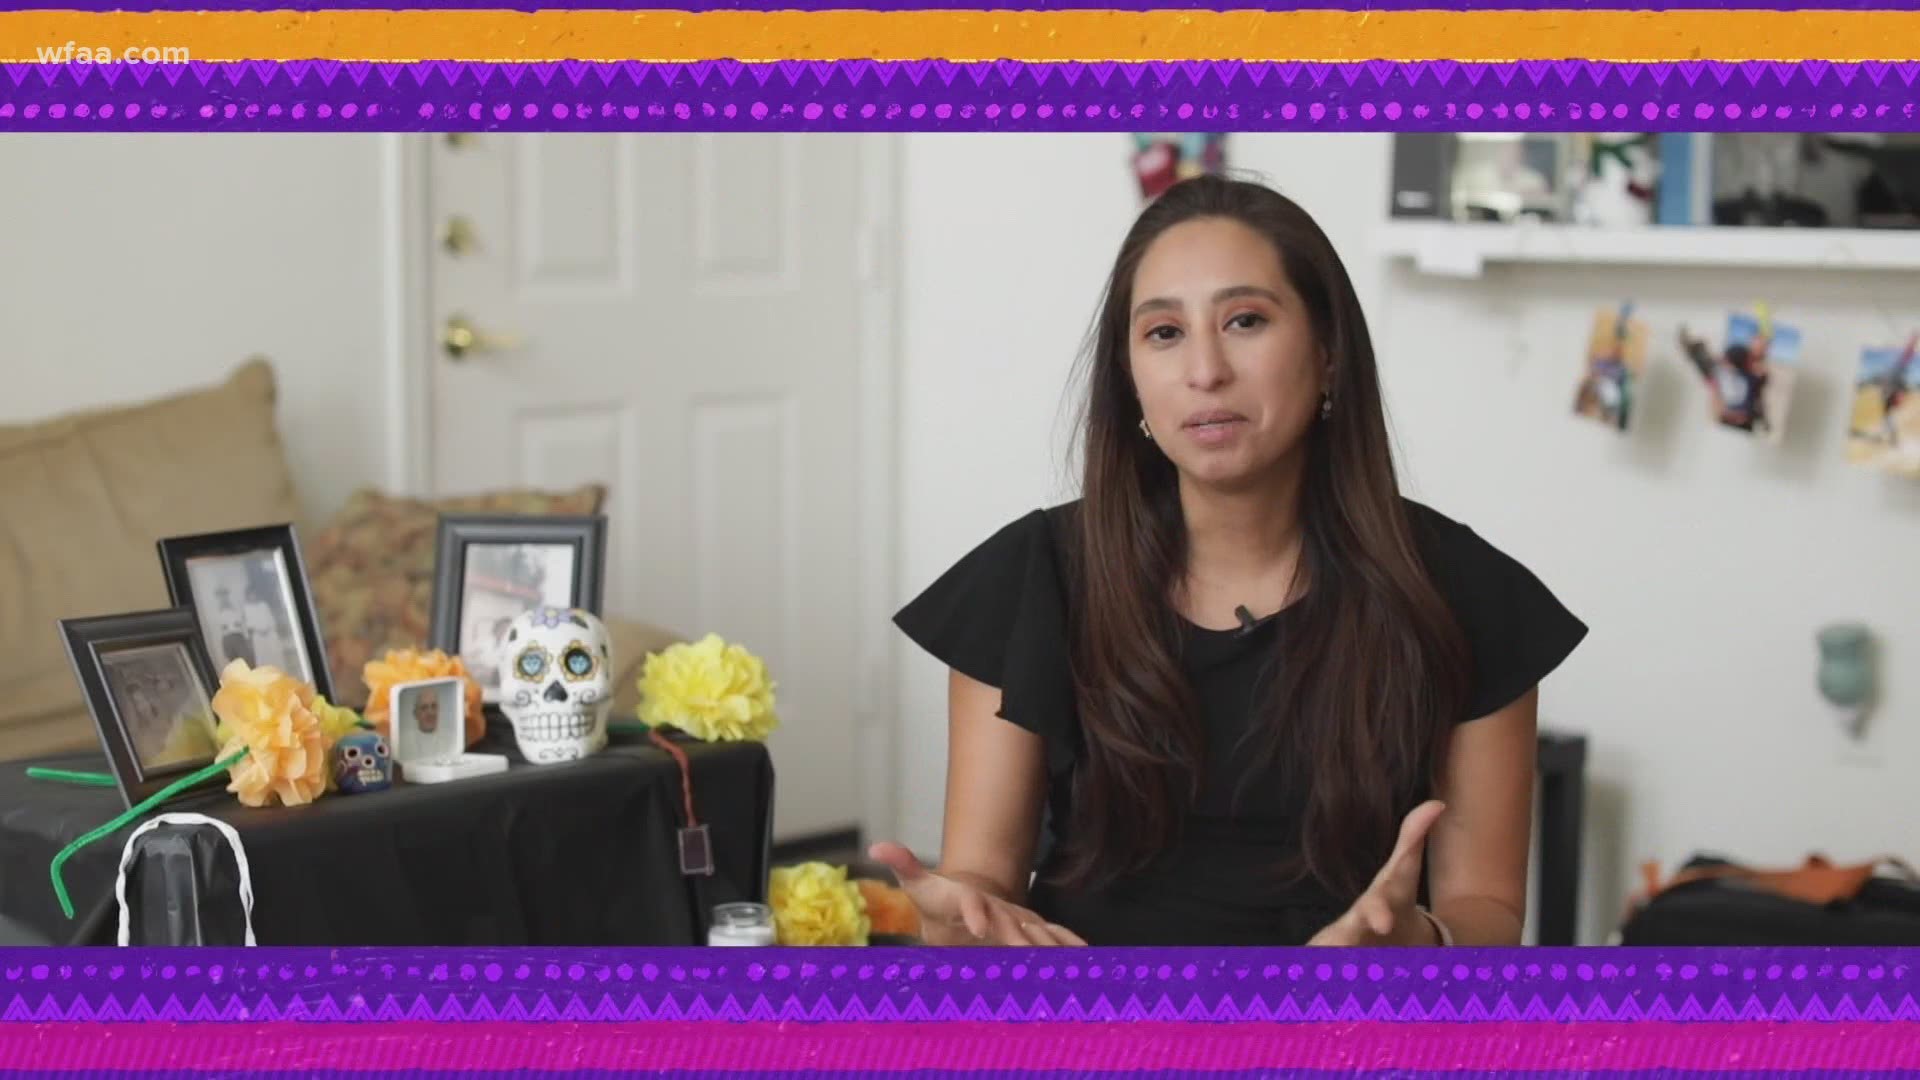 Lourdes explains Día de los Muertos and how her family celebrates.